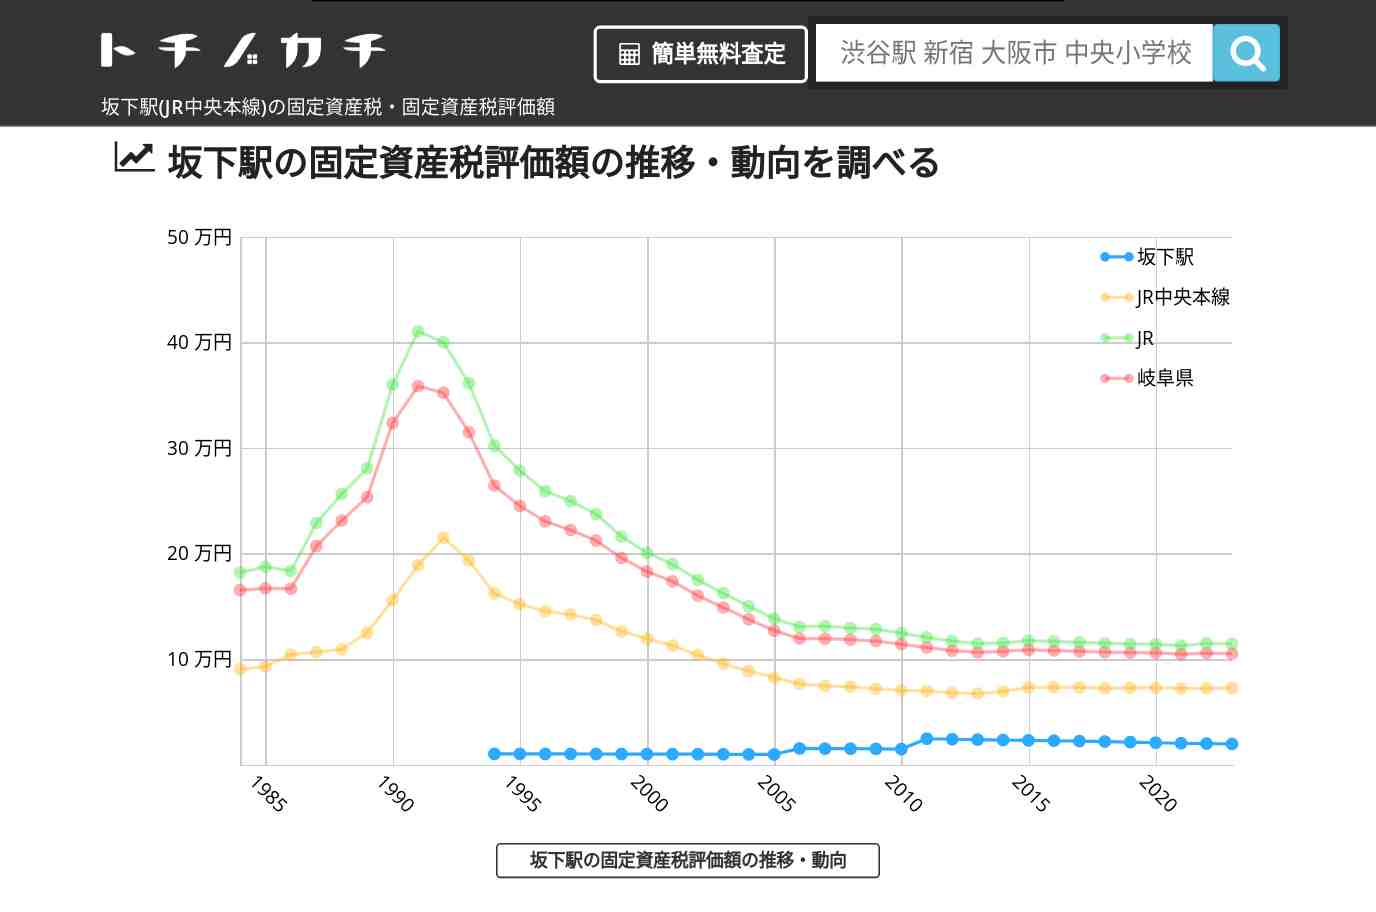 坂下駅(JR中央本線)の固定資産税・固定資産税評価額 | トチノカチ